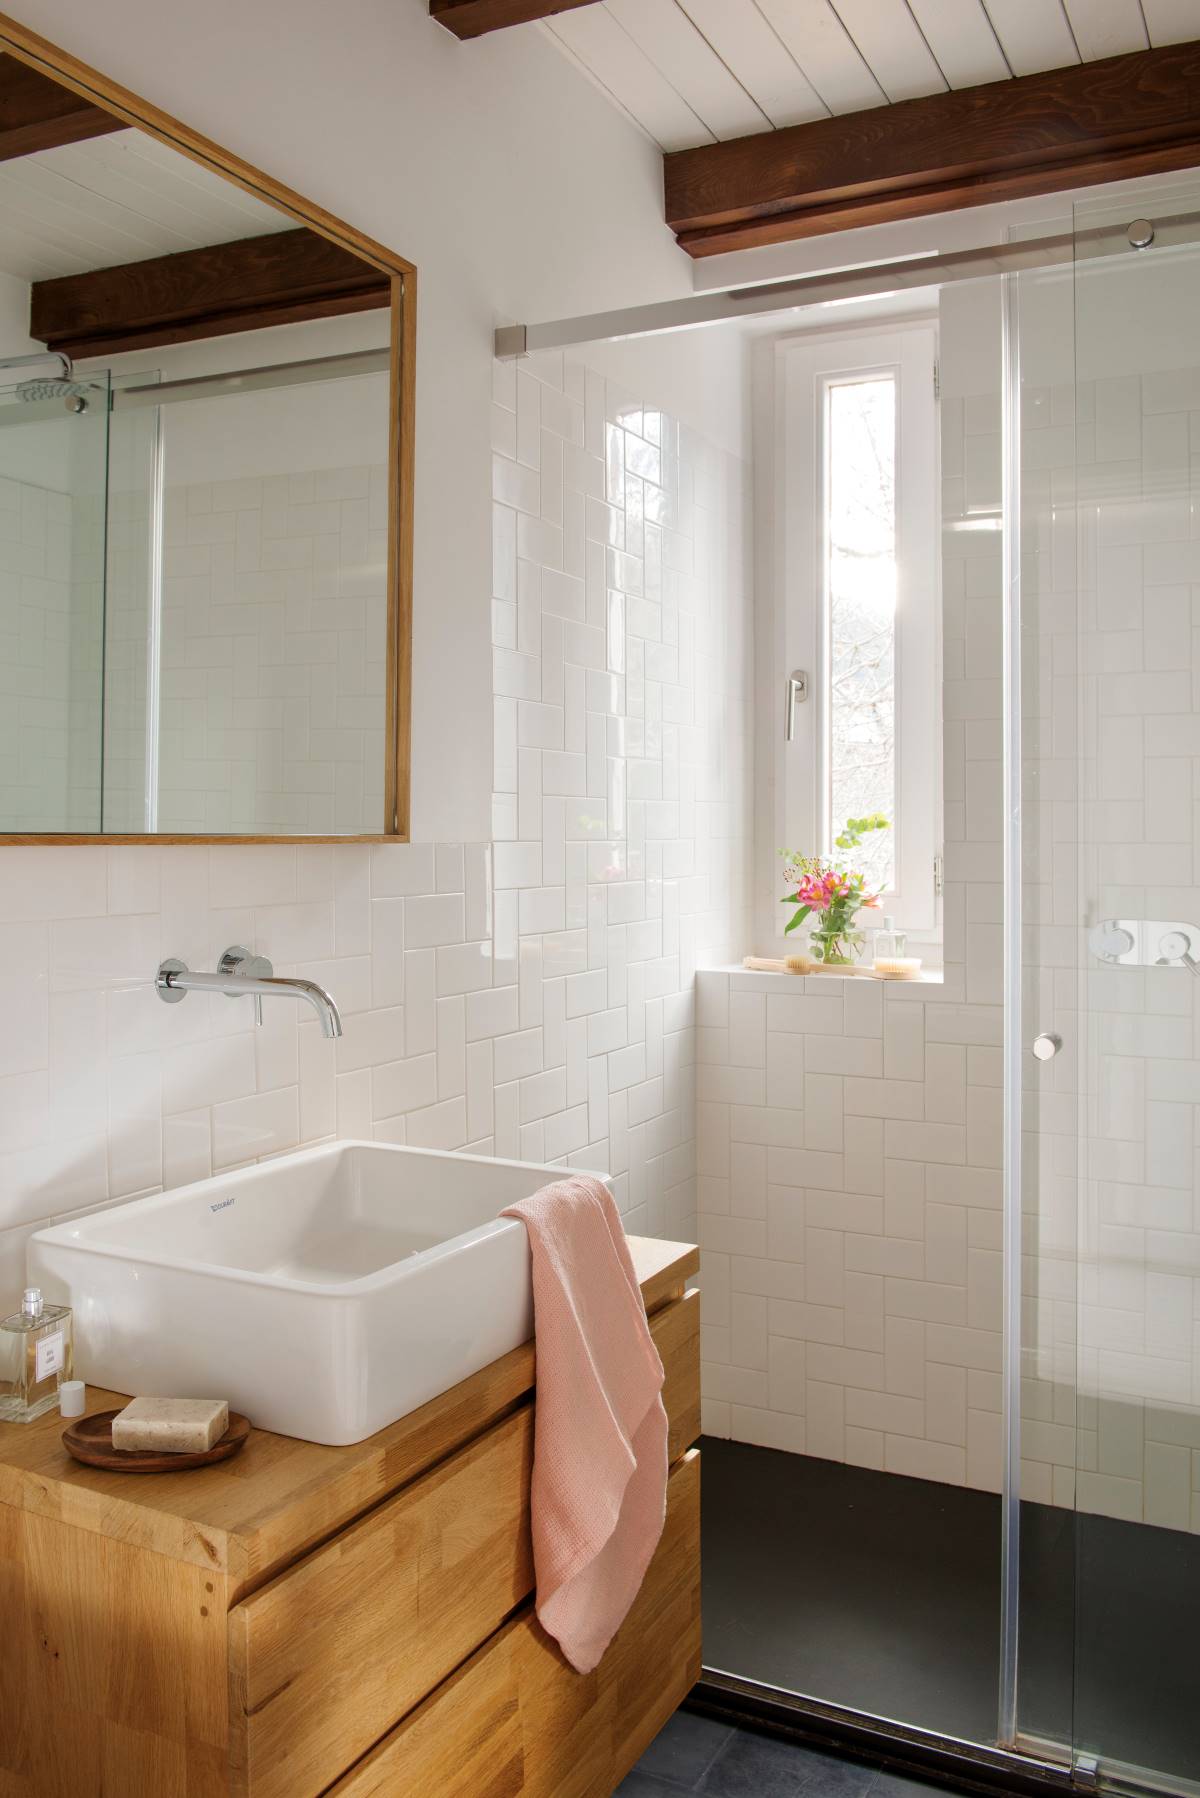 Baño pequeño moderno en blanco con mueble de madera.